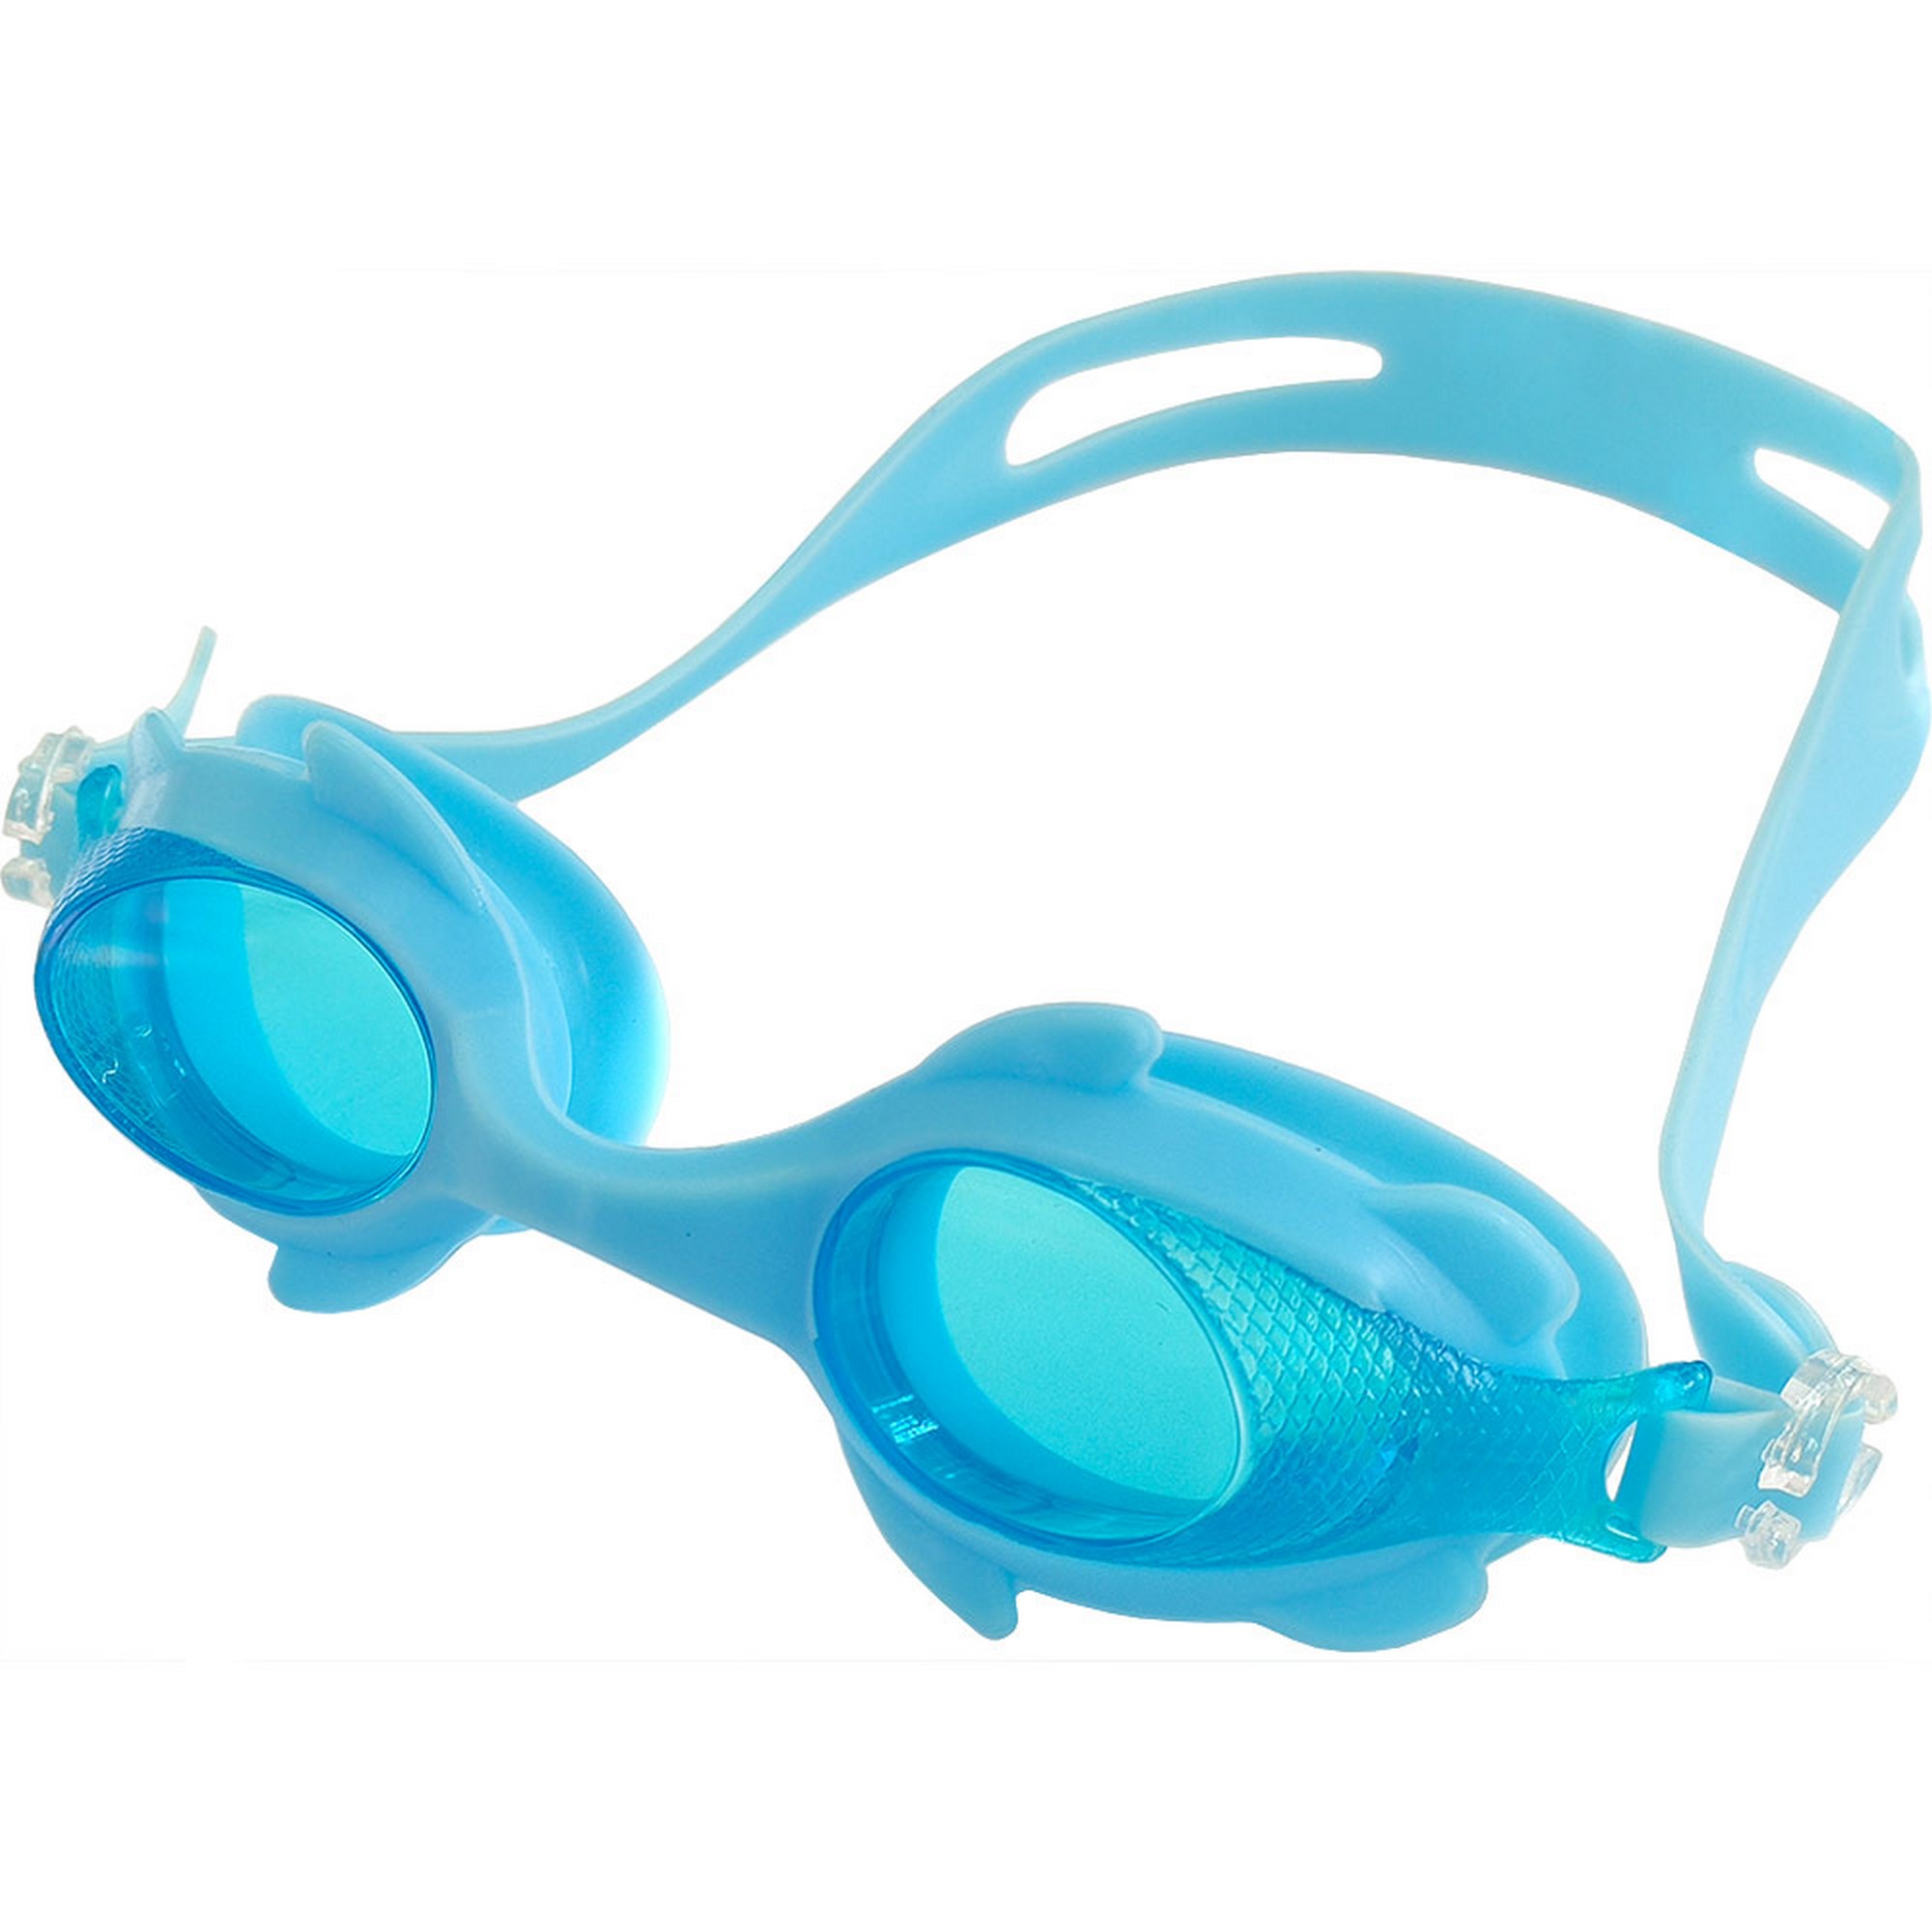 Очки для плавания Sportex детскиеюниорские R18166-0 голубой,  - купить со скидкой